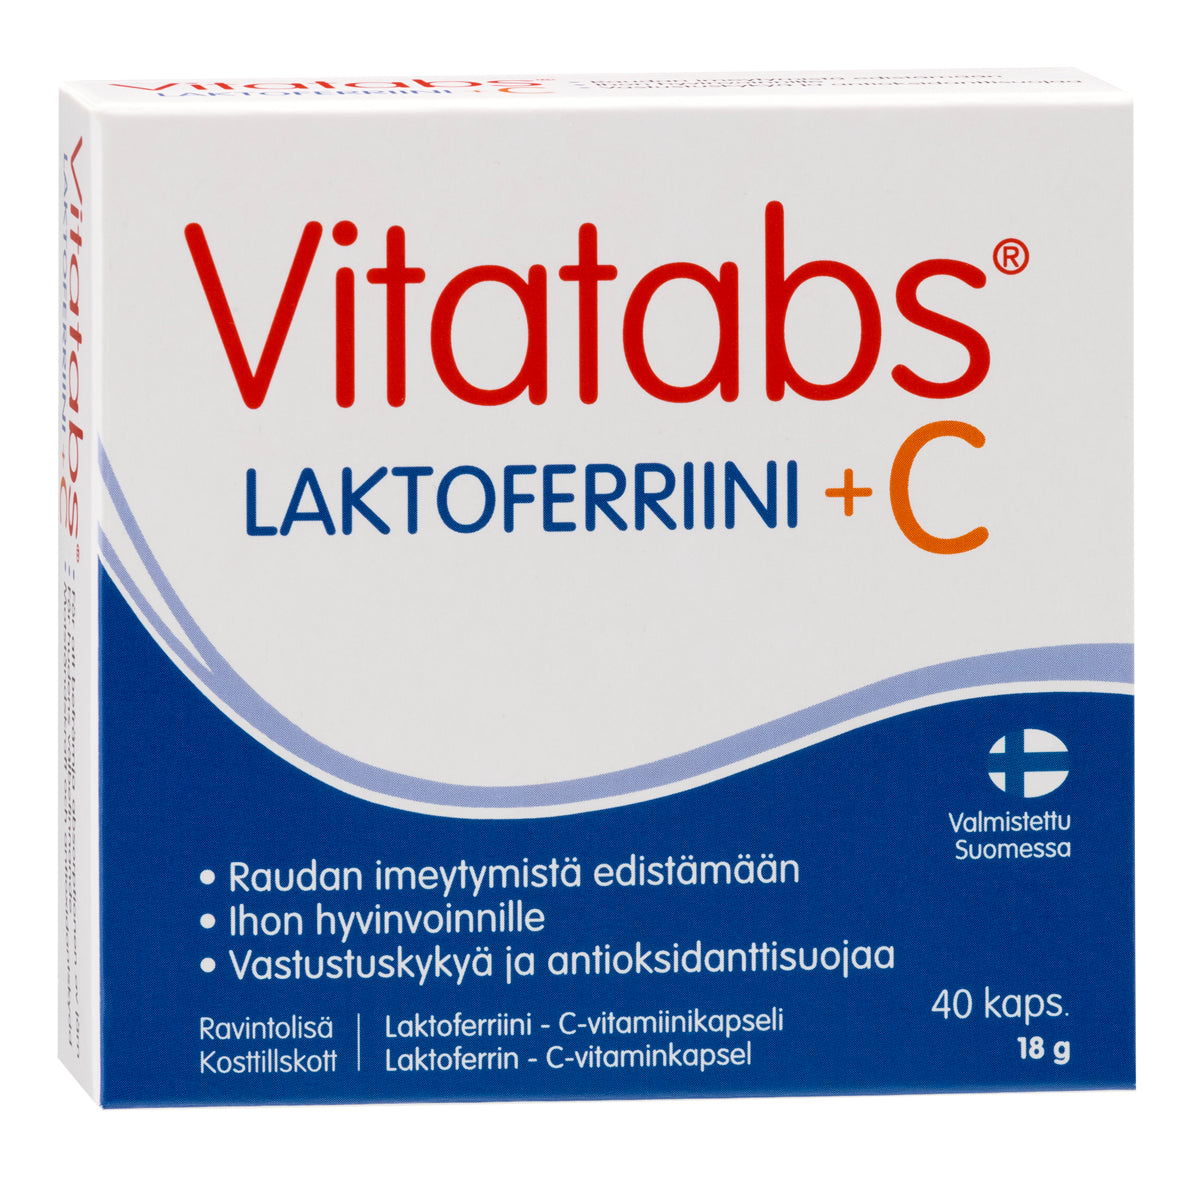 Vitatabs Laktoferriini + C 40 kaps.